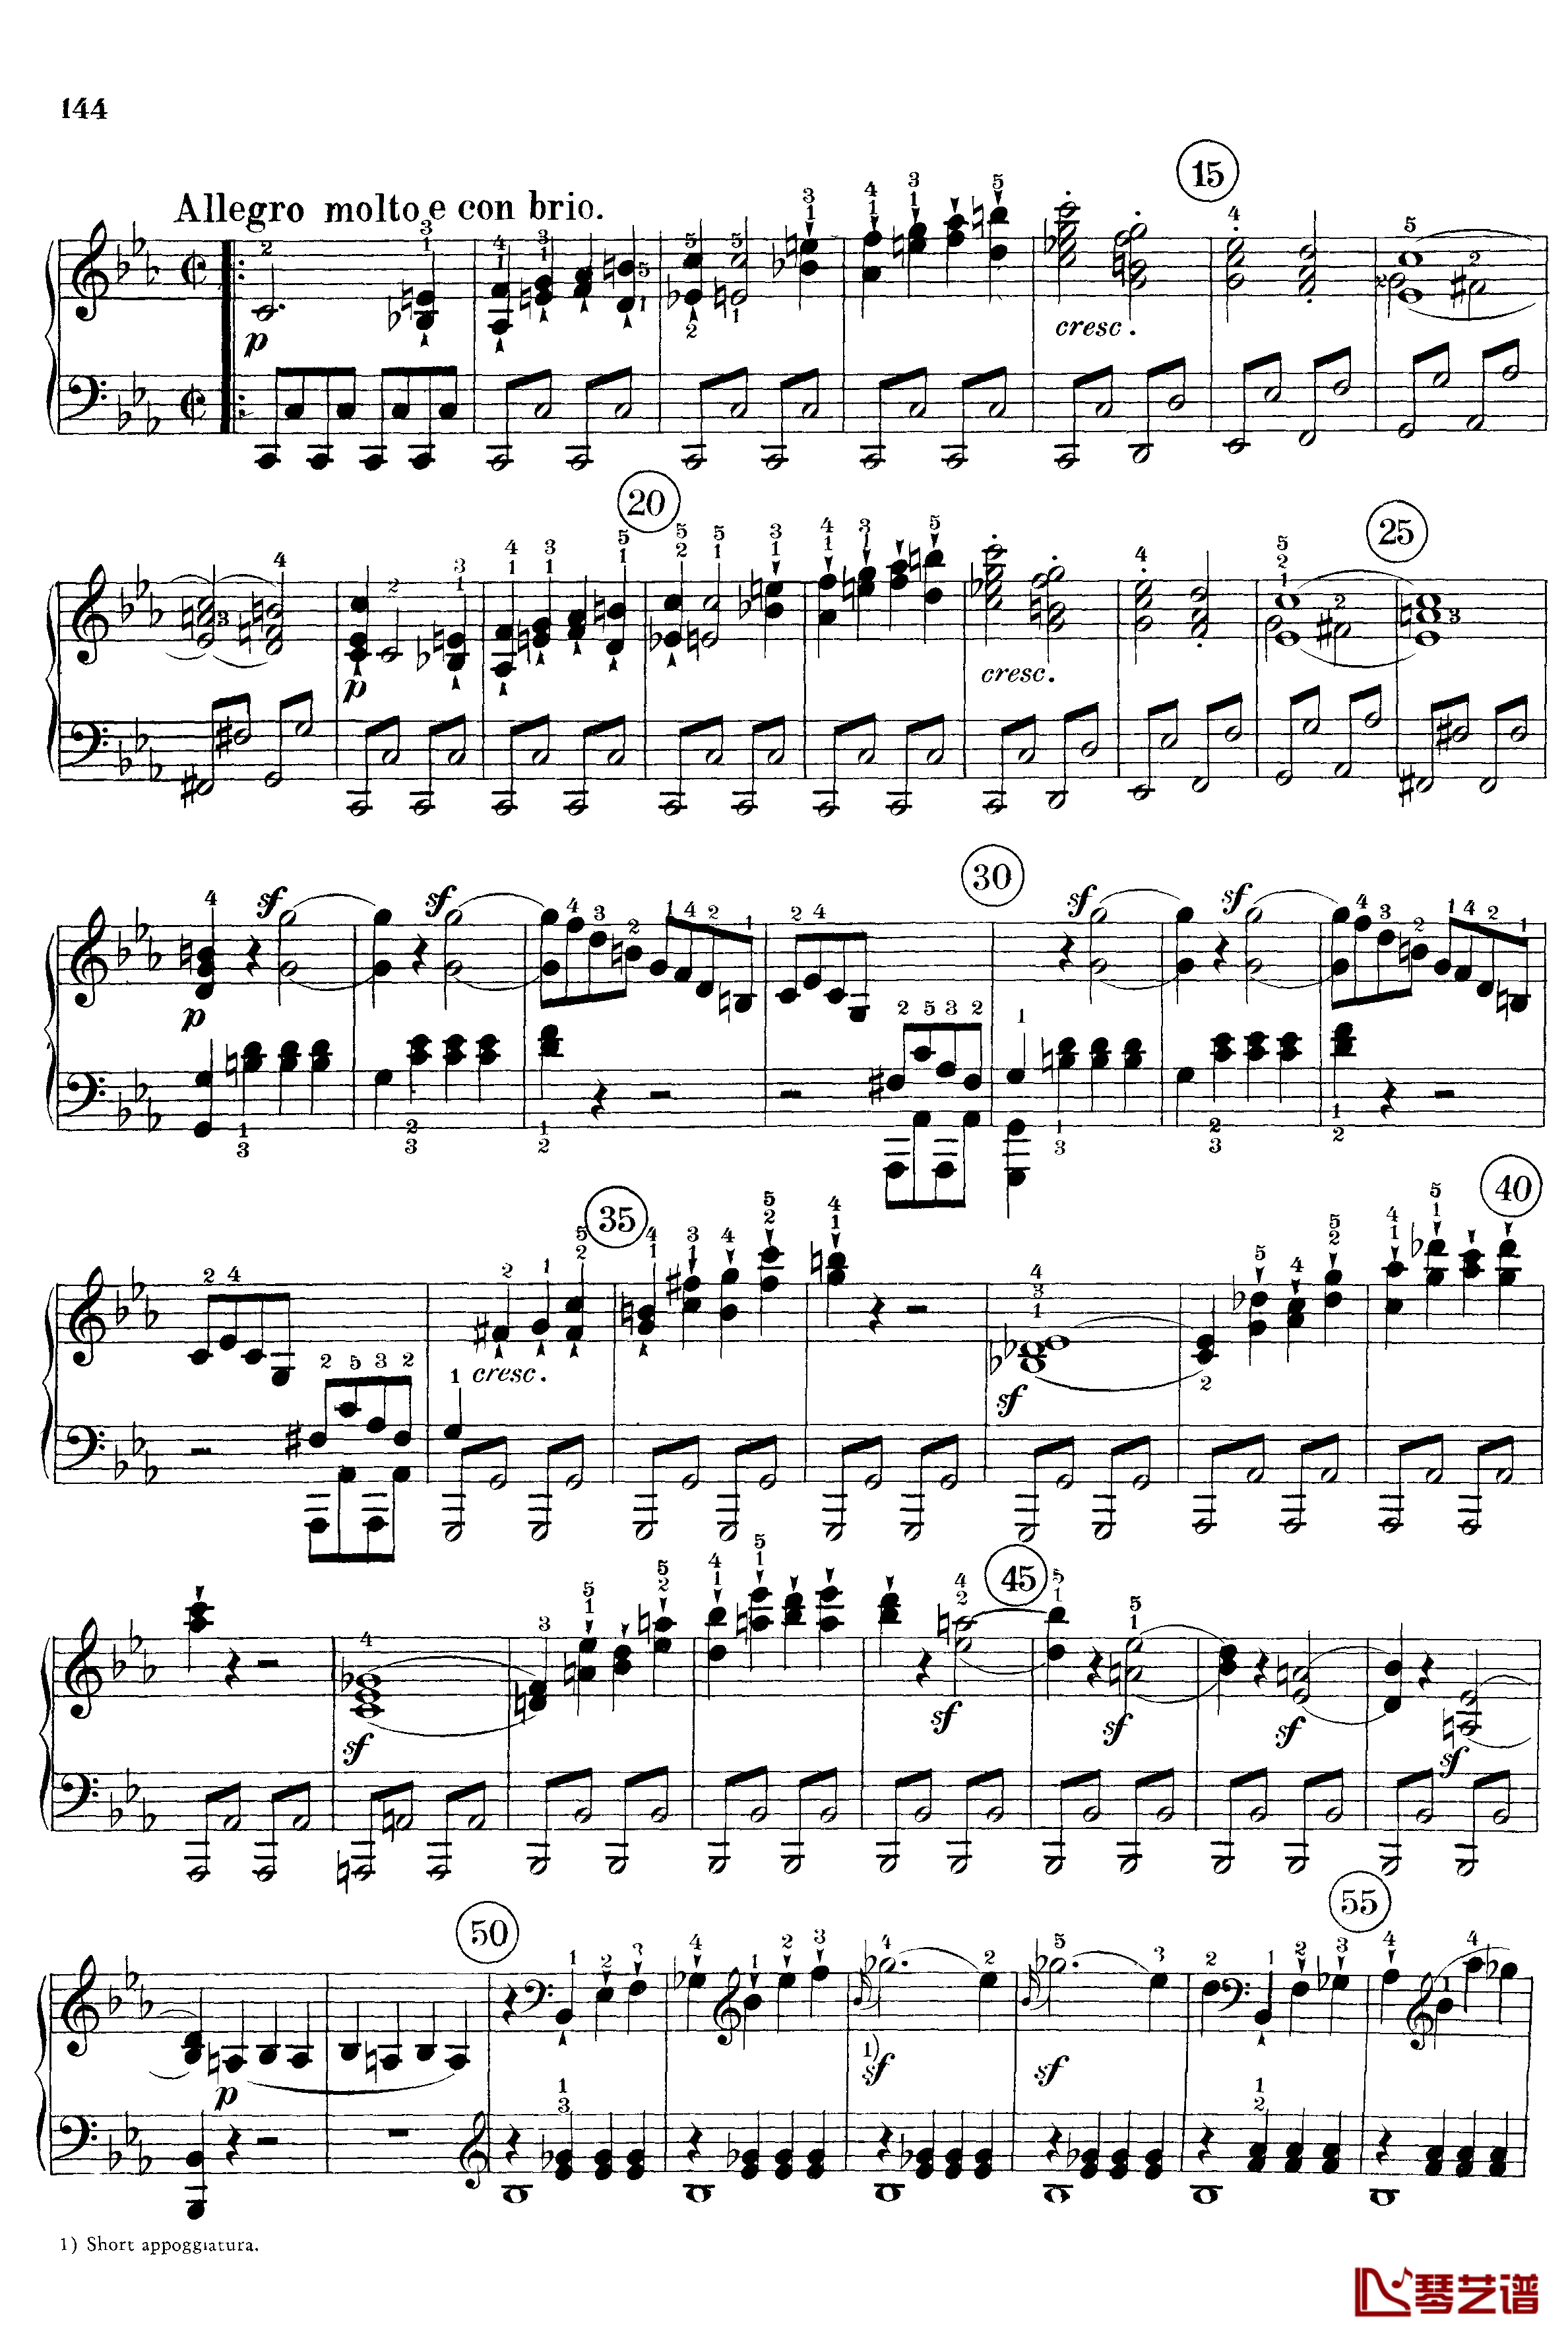 悲怆钢琴谱-c小调第八号钢琴奏鸣曲-全乐章-带指法版-贝多芬-beethoven